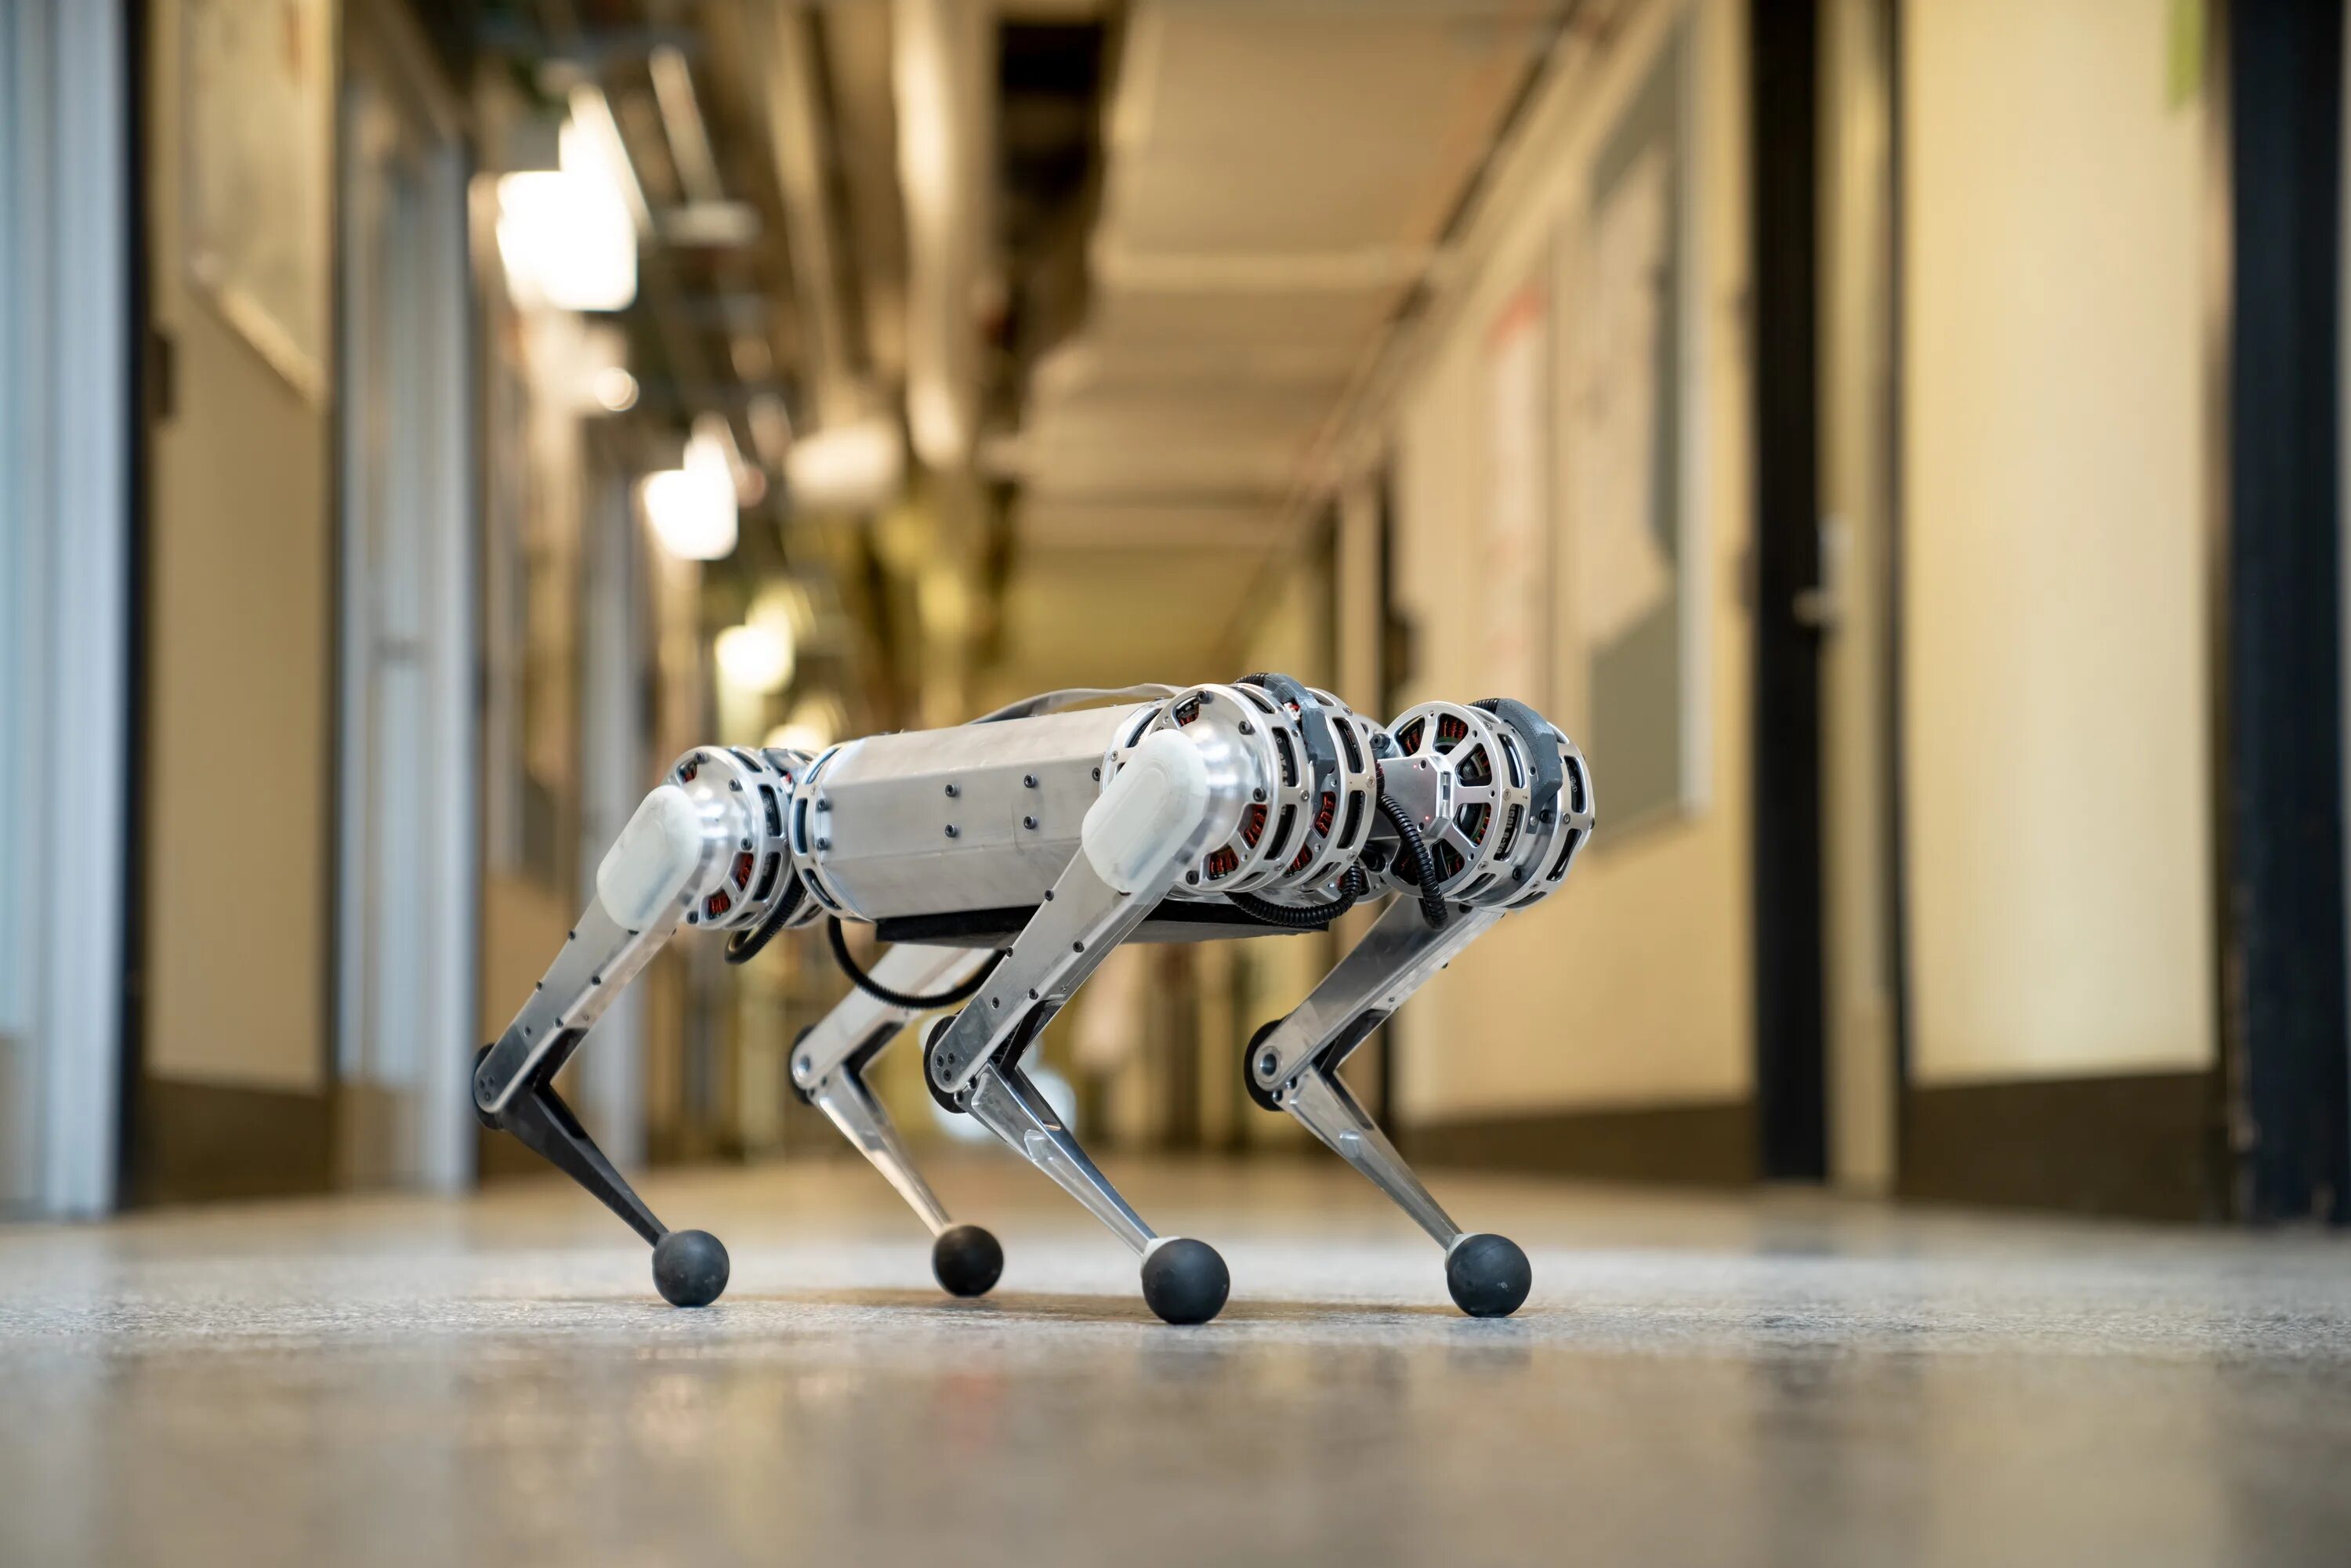 Robot de jole by gaspr. Cheetah робот Boston Dynamics. Робот-гепард – Cheetah. Робот гепард Boston Dynamics. Робот mit Cheetah 2.